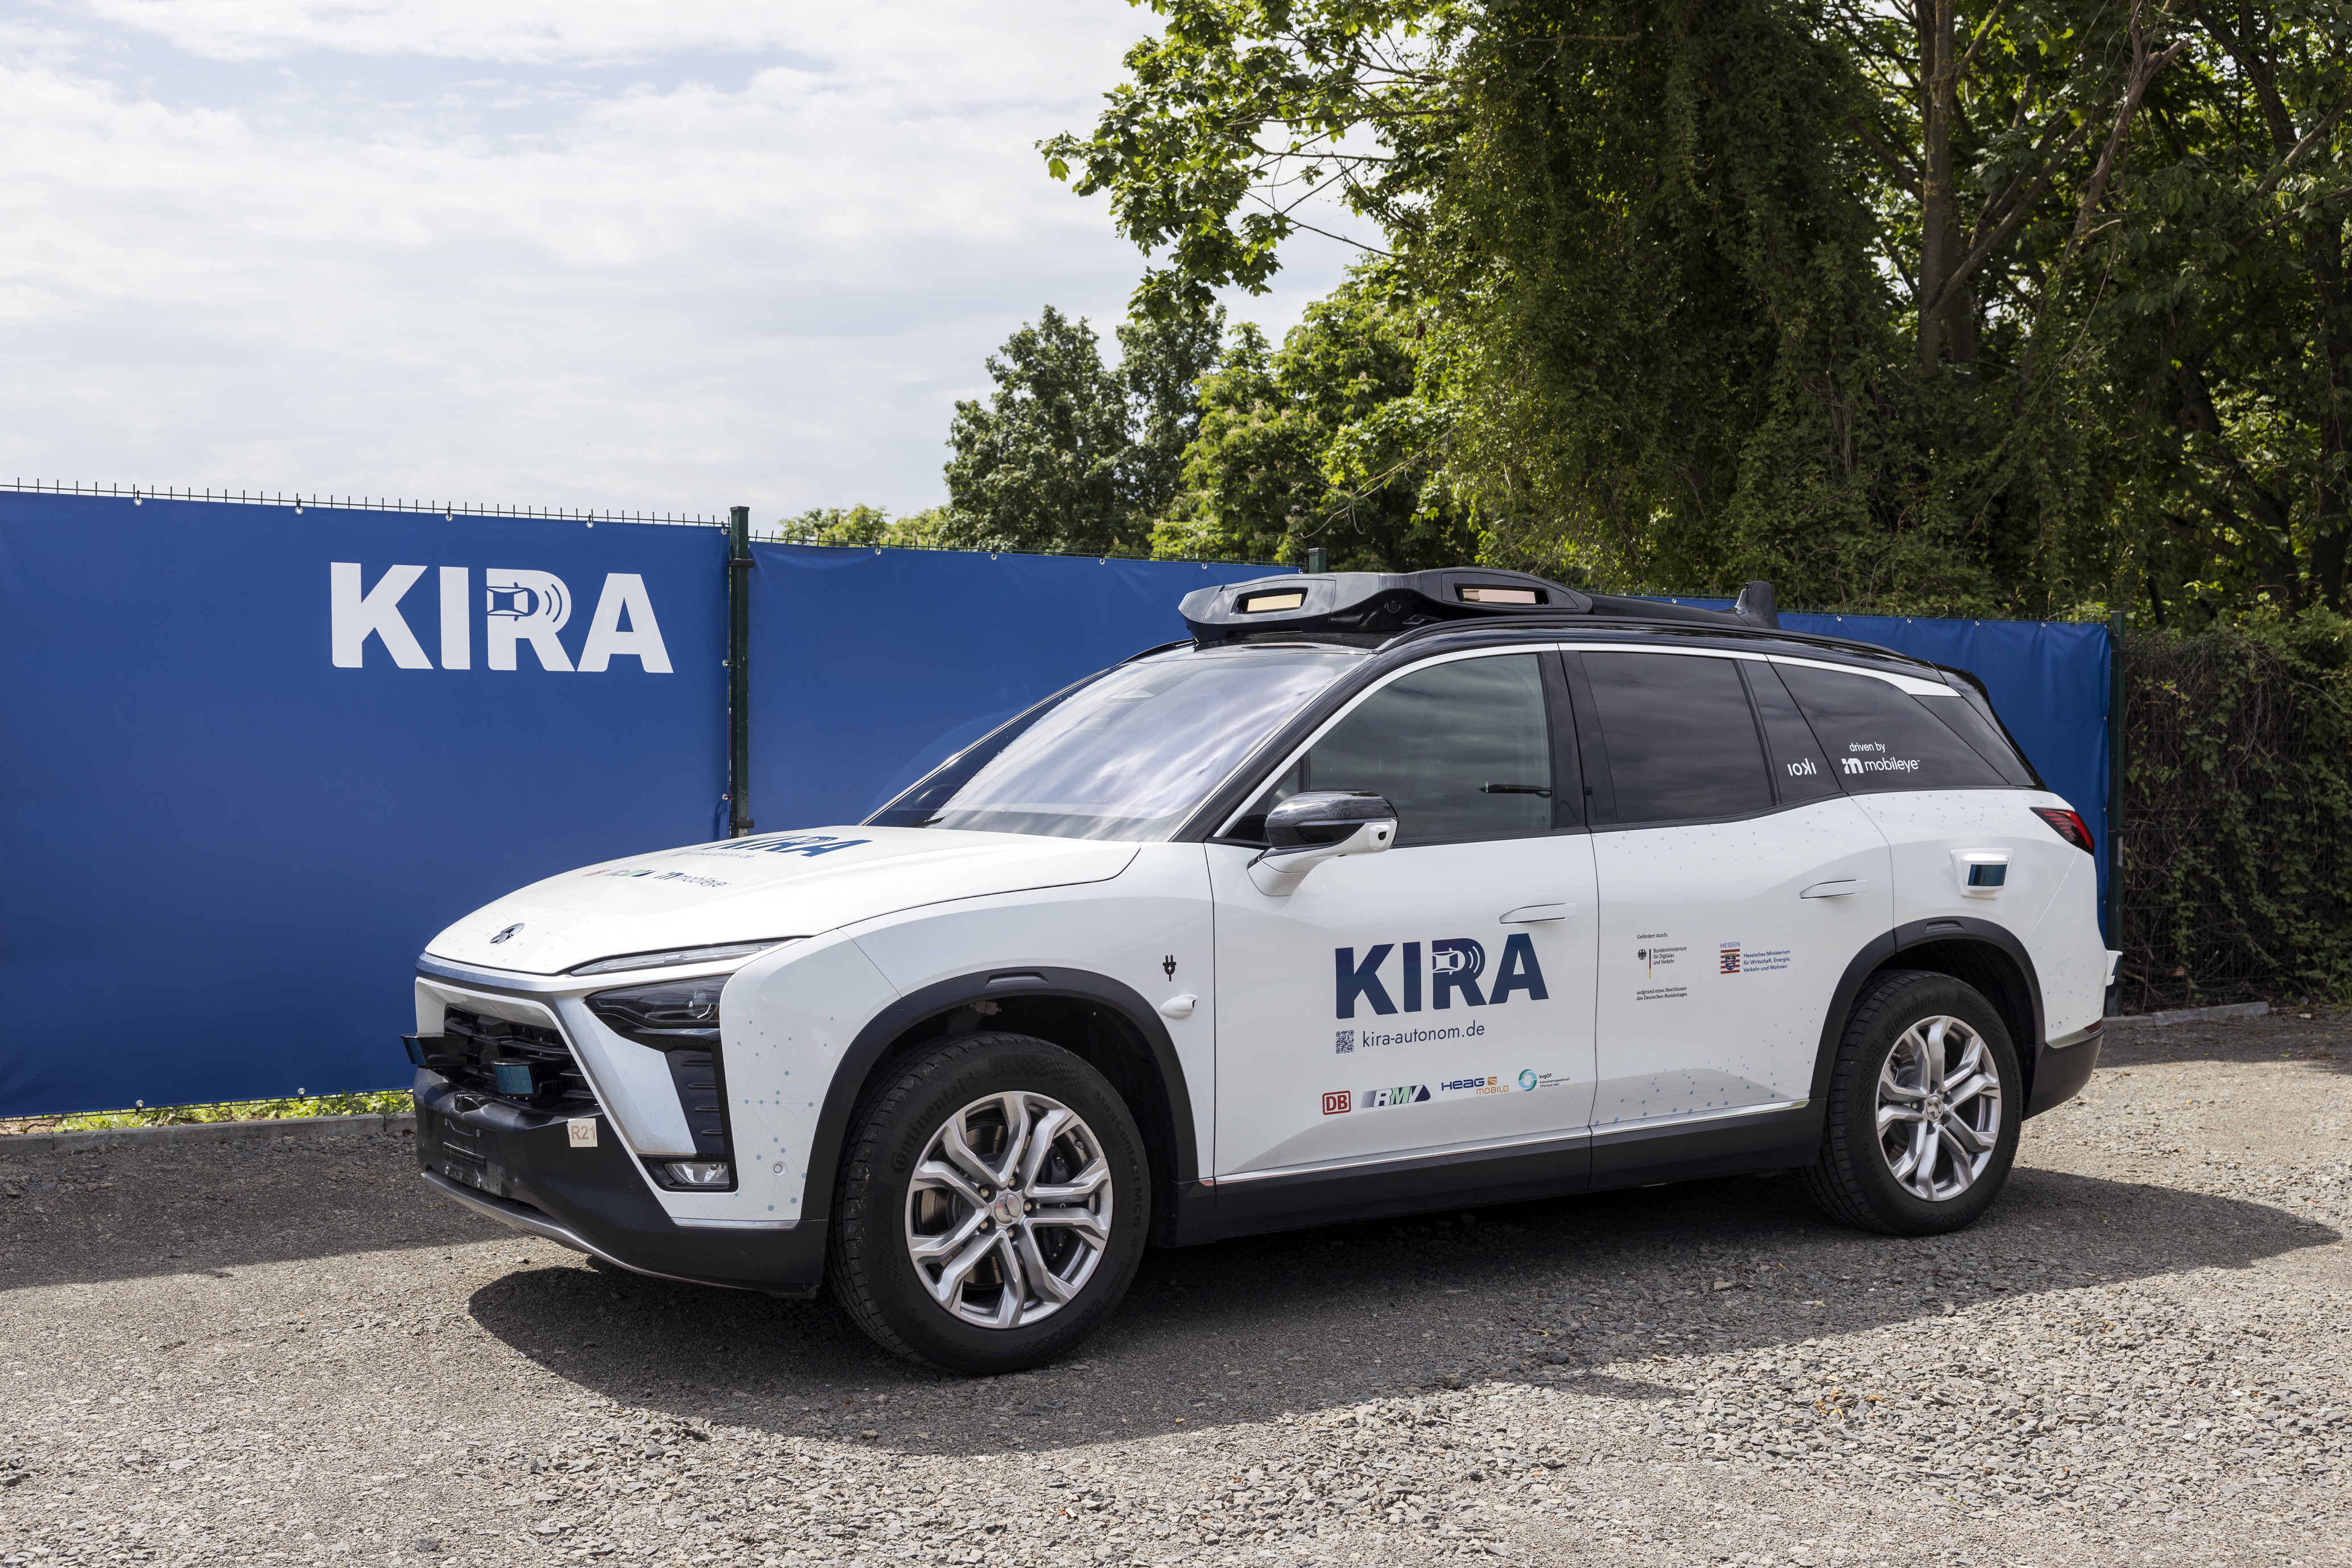 Nasce KIRA, il progetto pioneristico con veicoli autonomi per il trasporto pubblico